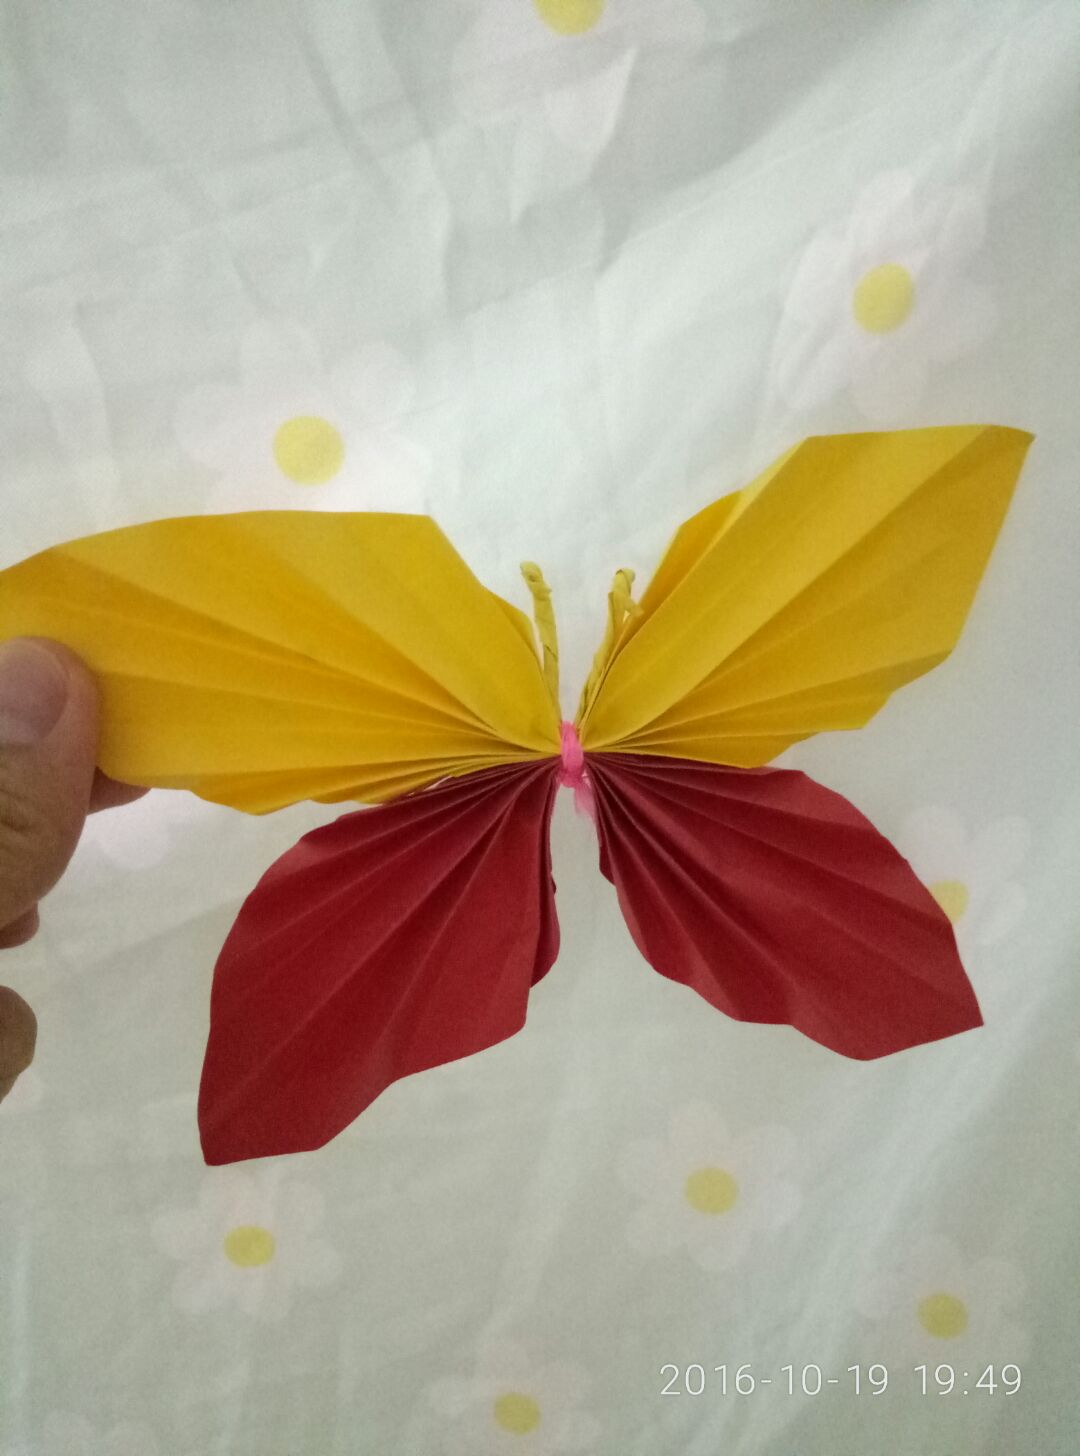 用折纸做出美丽的蝴蝶